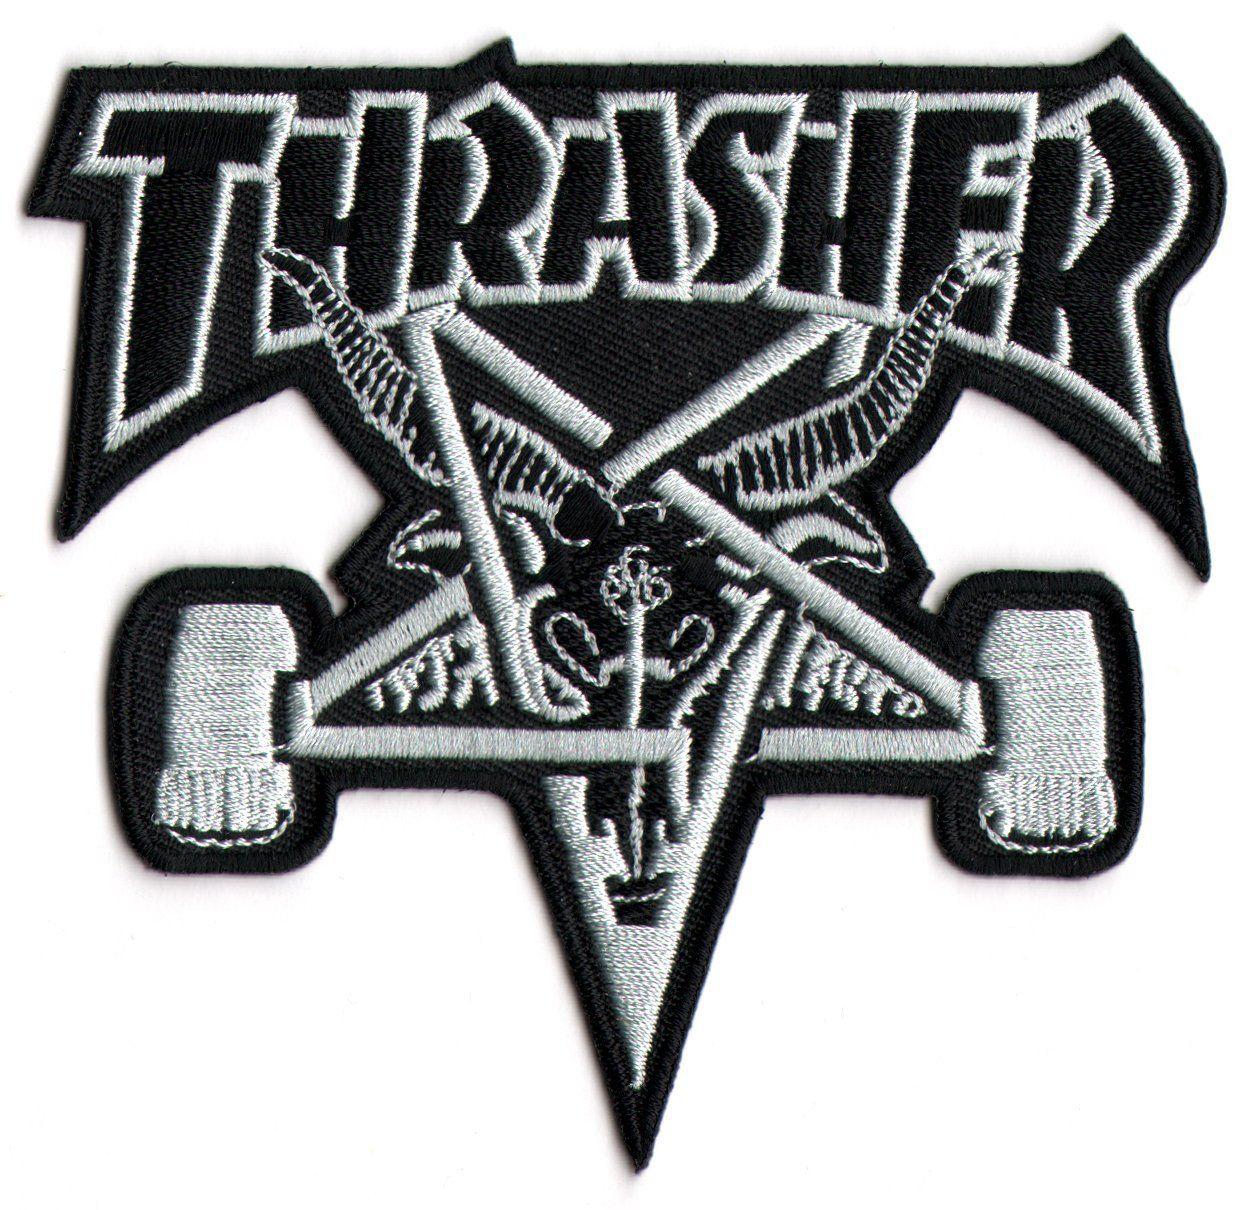 Amazon.com, Thrasher Skateboard Magazine Punk Rock Music Skateboard